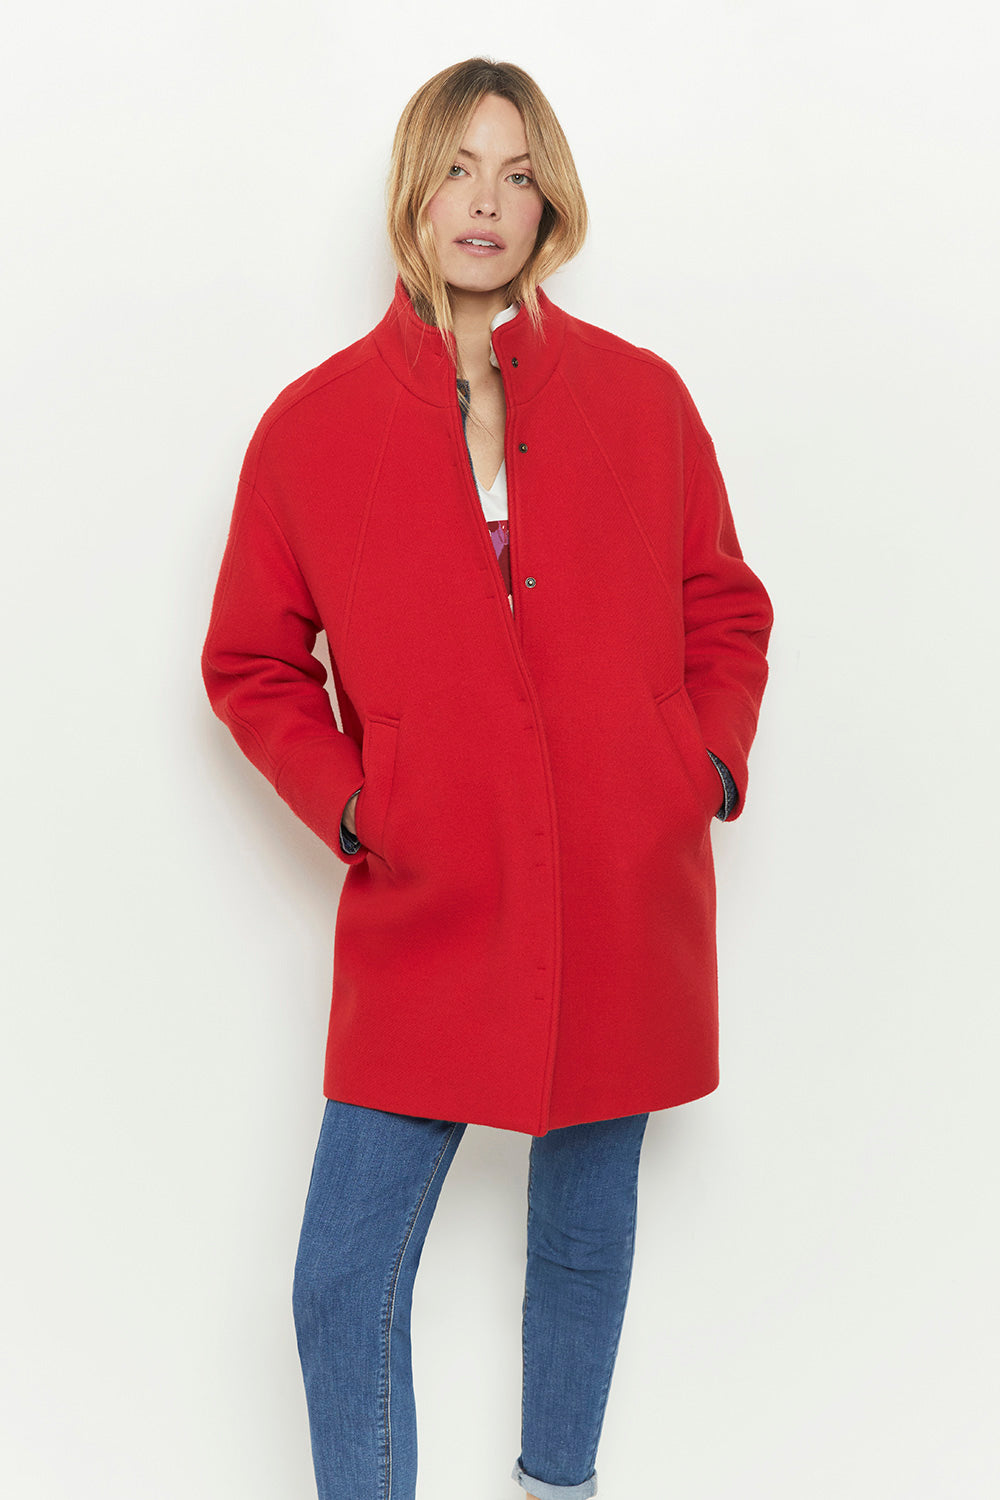 DALHIA - Manteau rouge en laine majoritaire